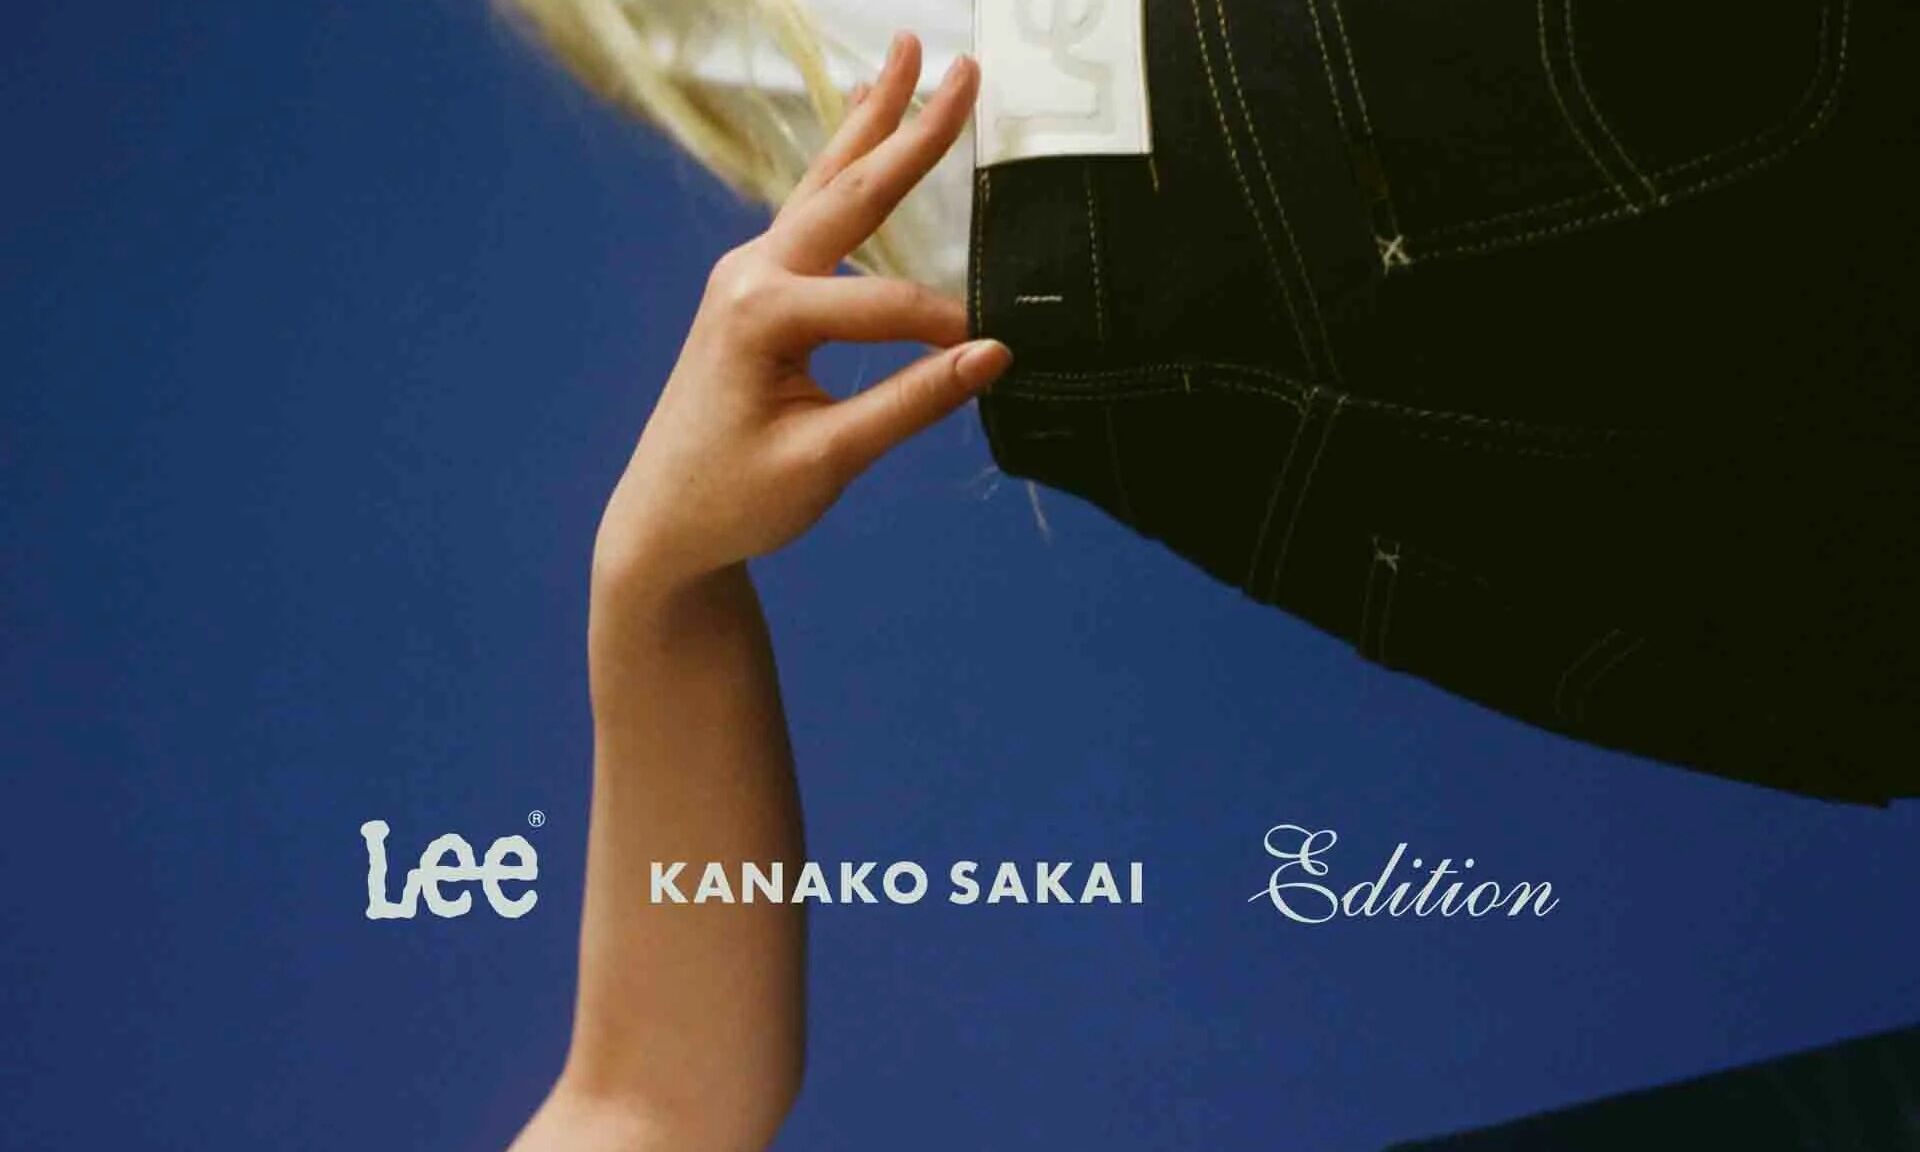 KANAKO SAKAI x Lee 联名款牛仔长裤即将发售